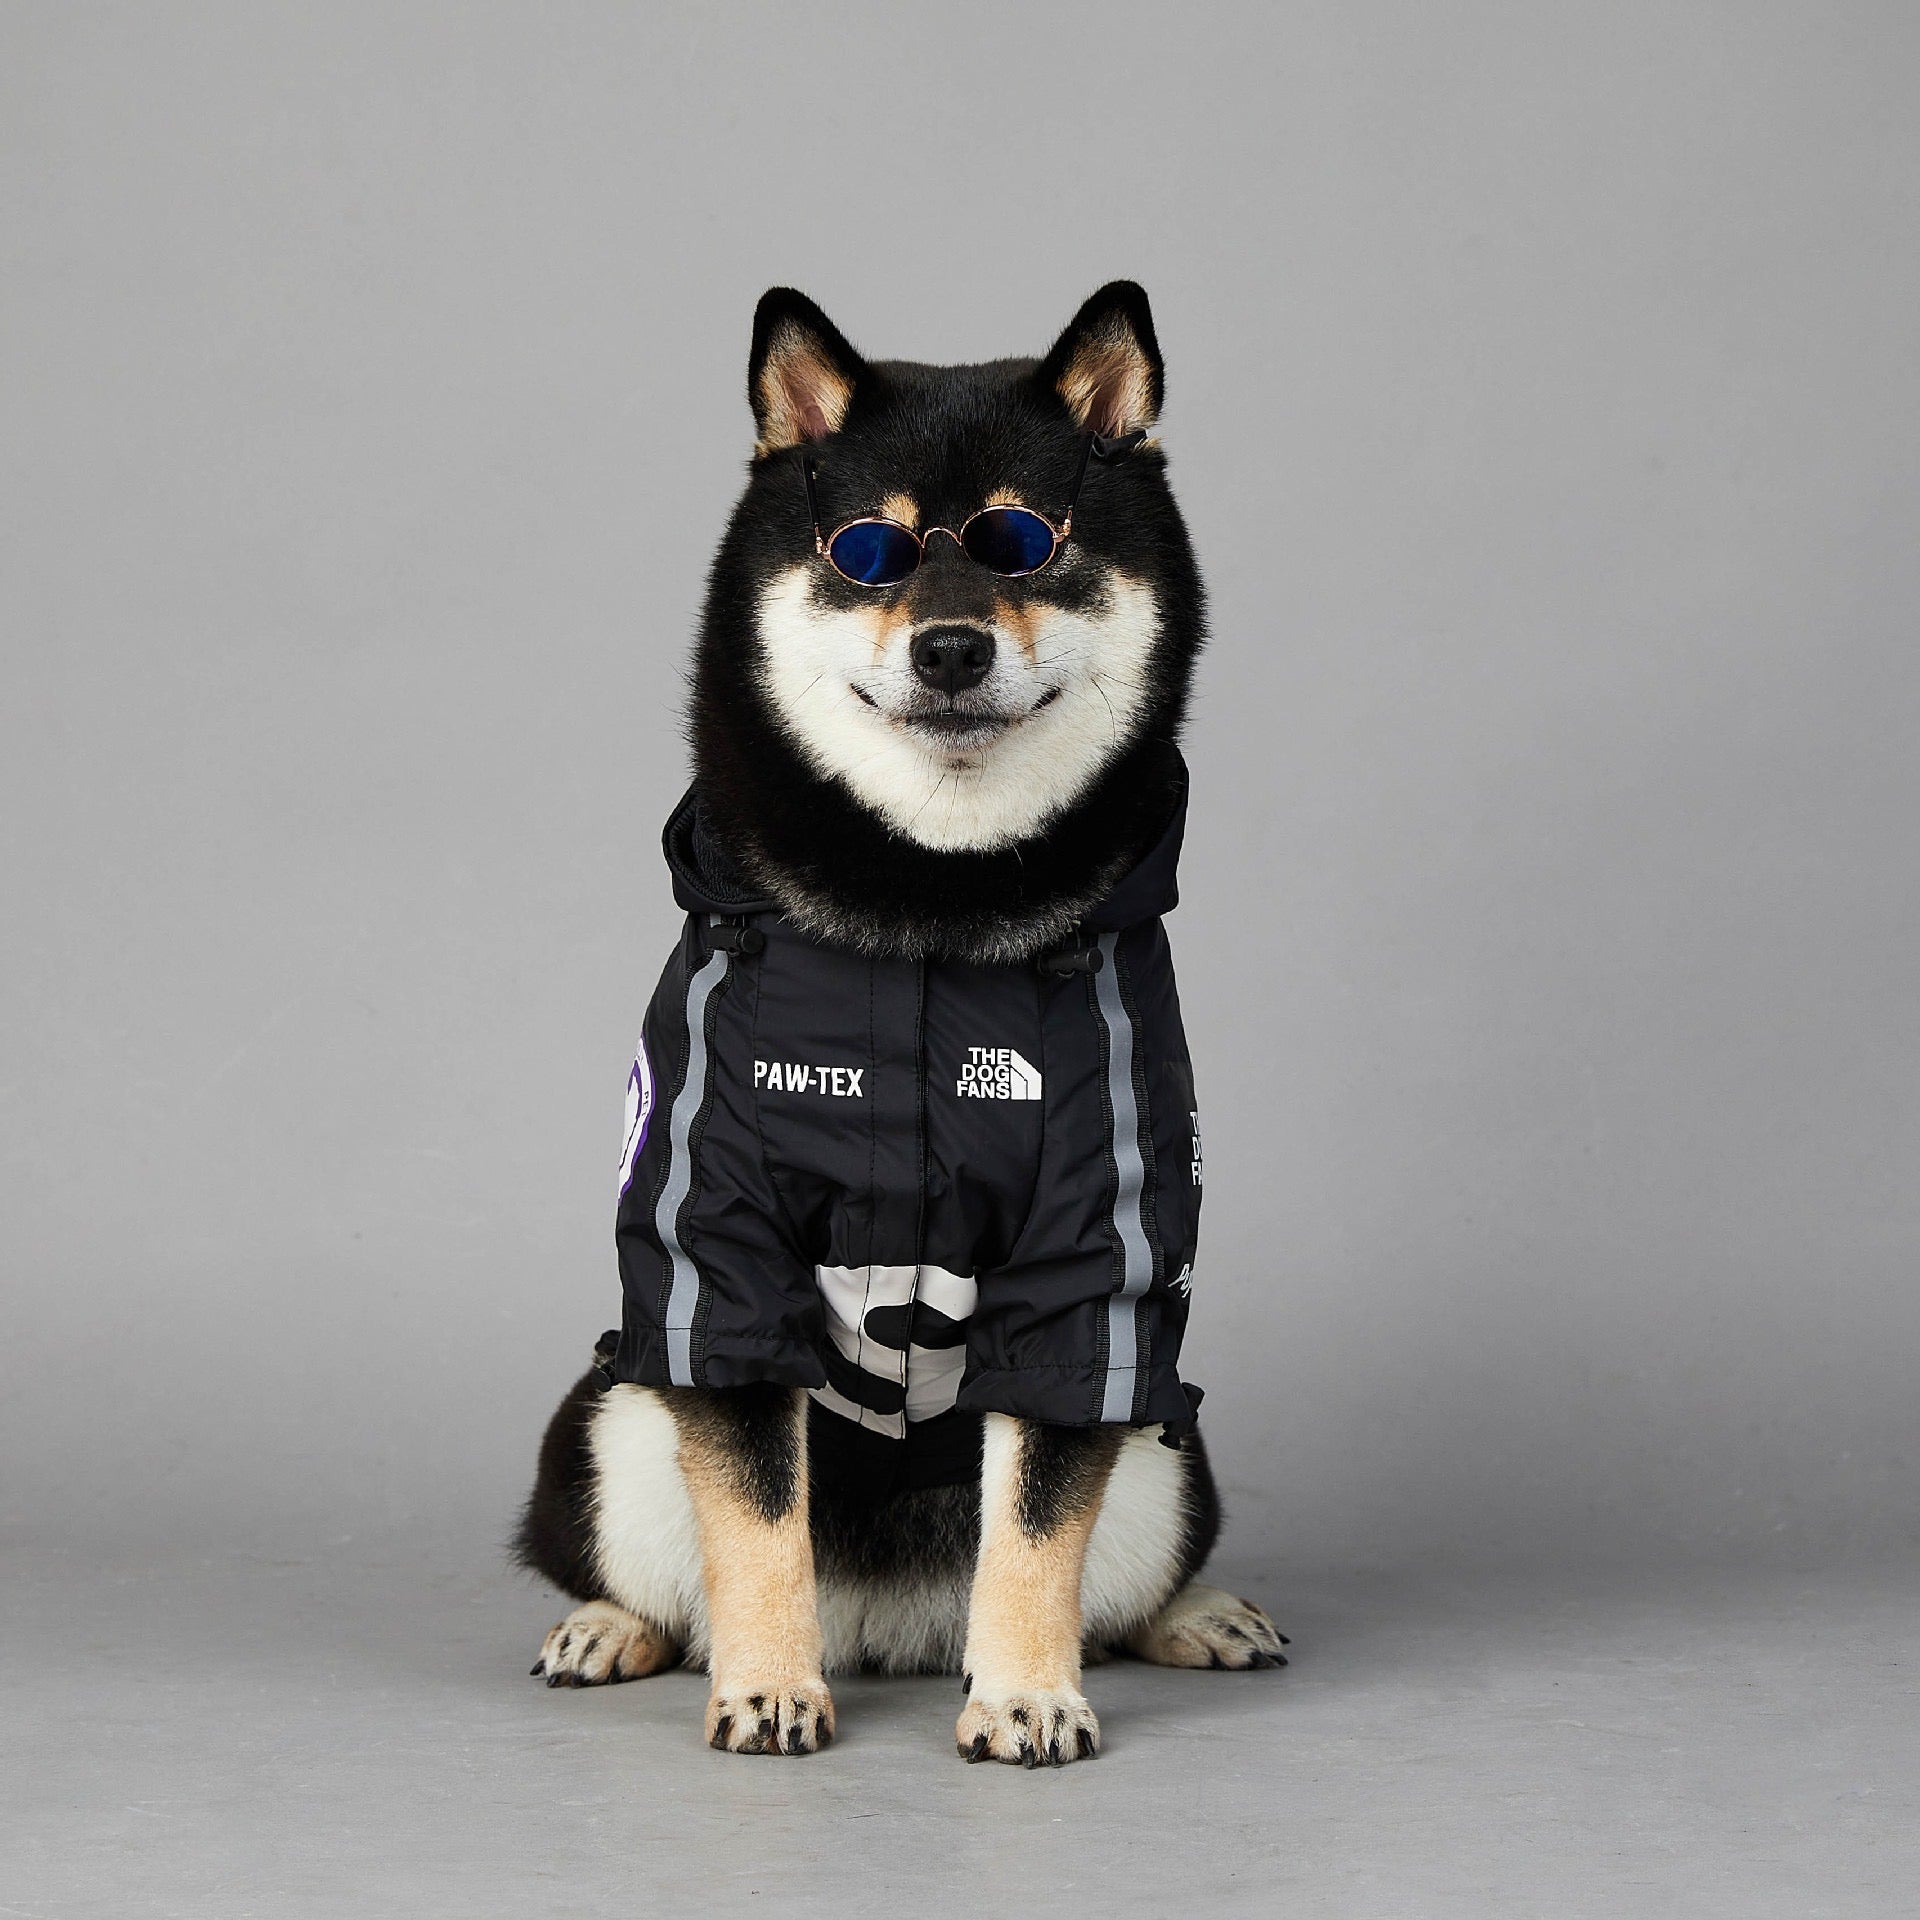 Supawme Dog Rain Jacket